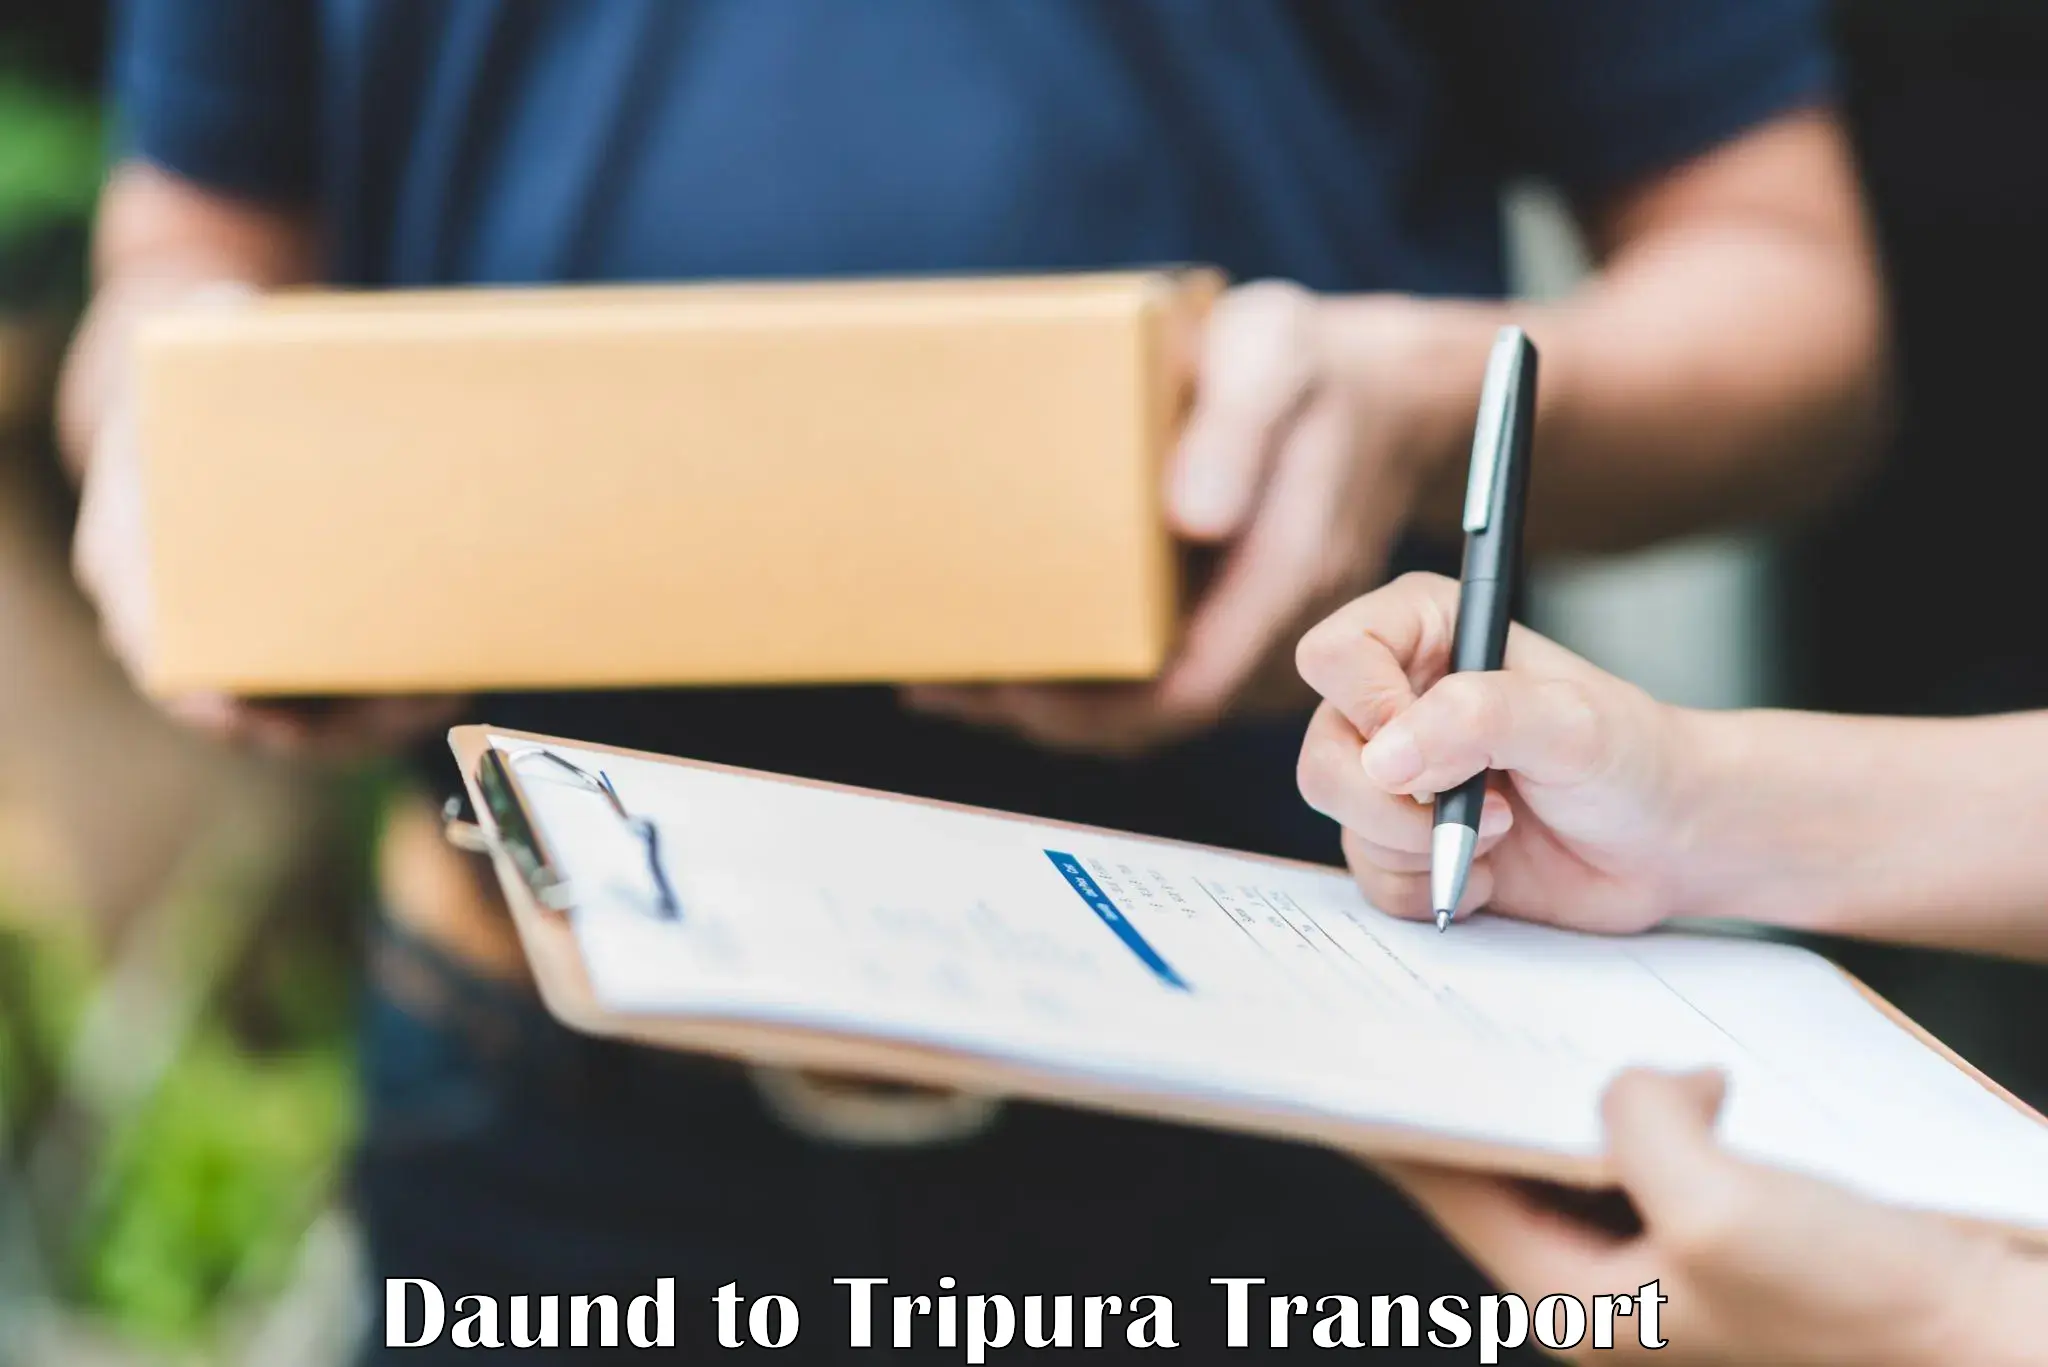 Online transport service Daund to Agartala